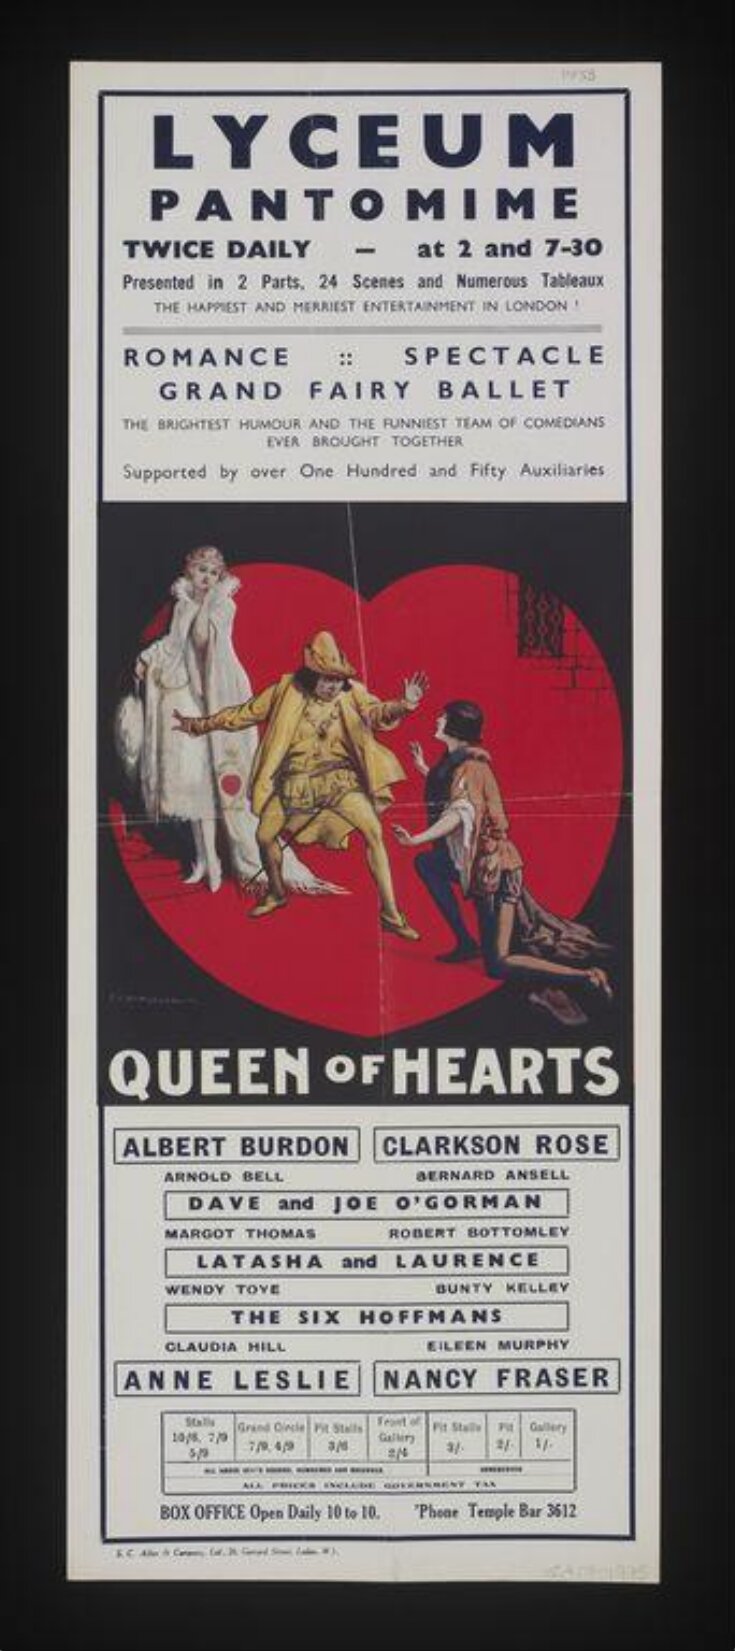 Queen of Hearts image